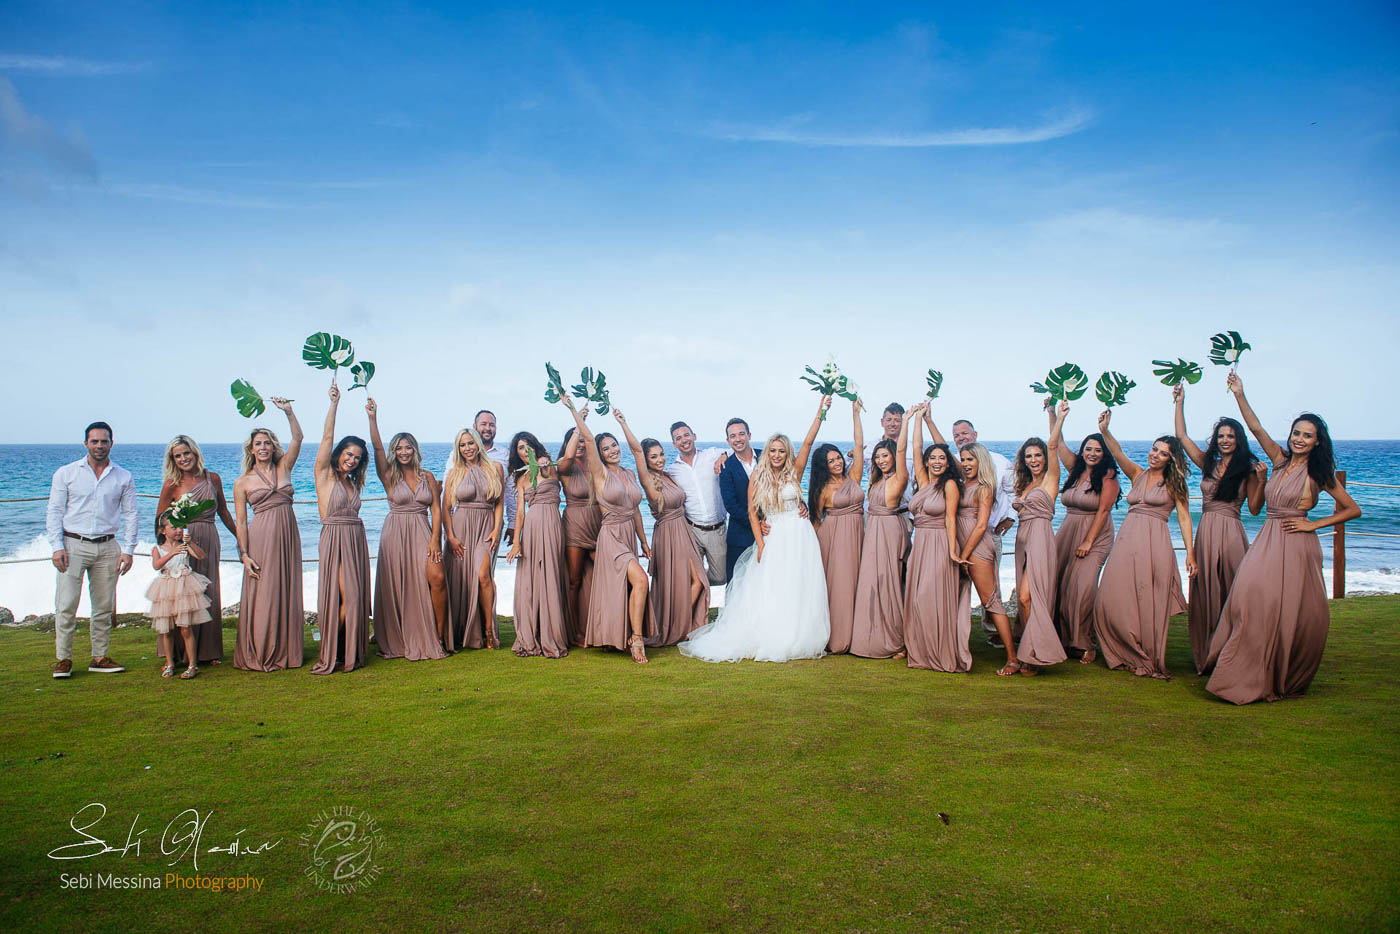 Bridesmaids Groomsmen kidding at a destination wedding in Cancun Mexico – Sebi Messina Photography